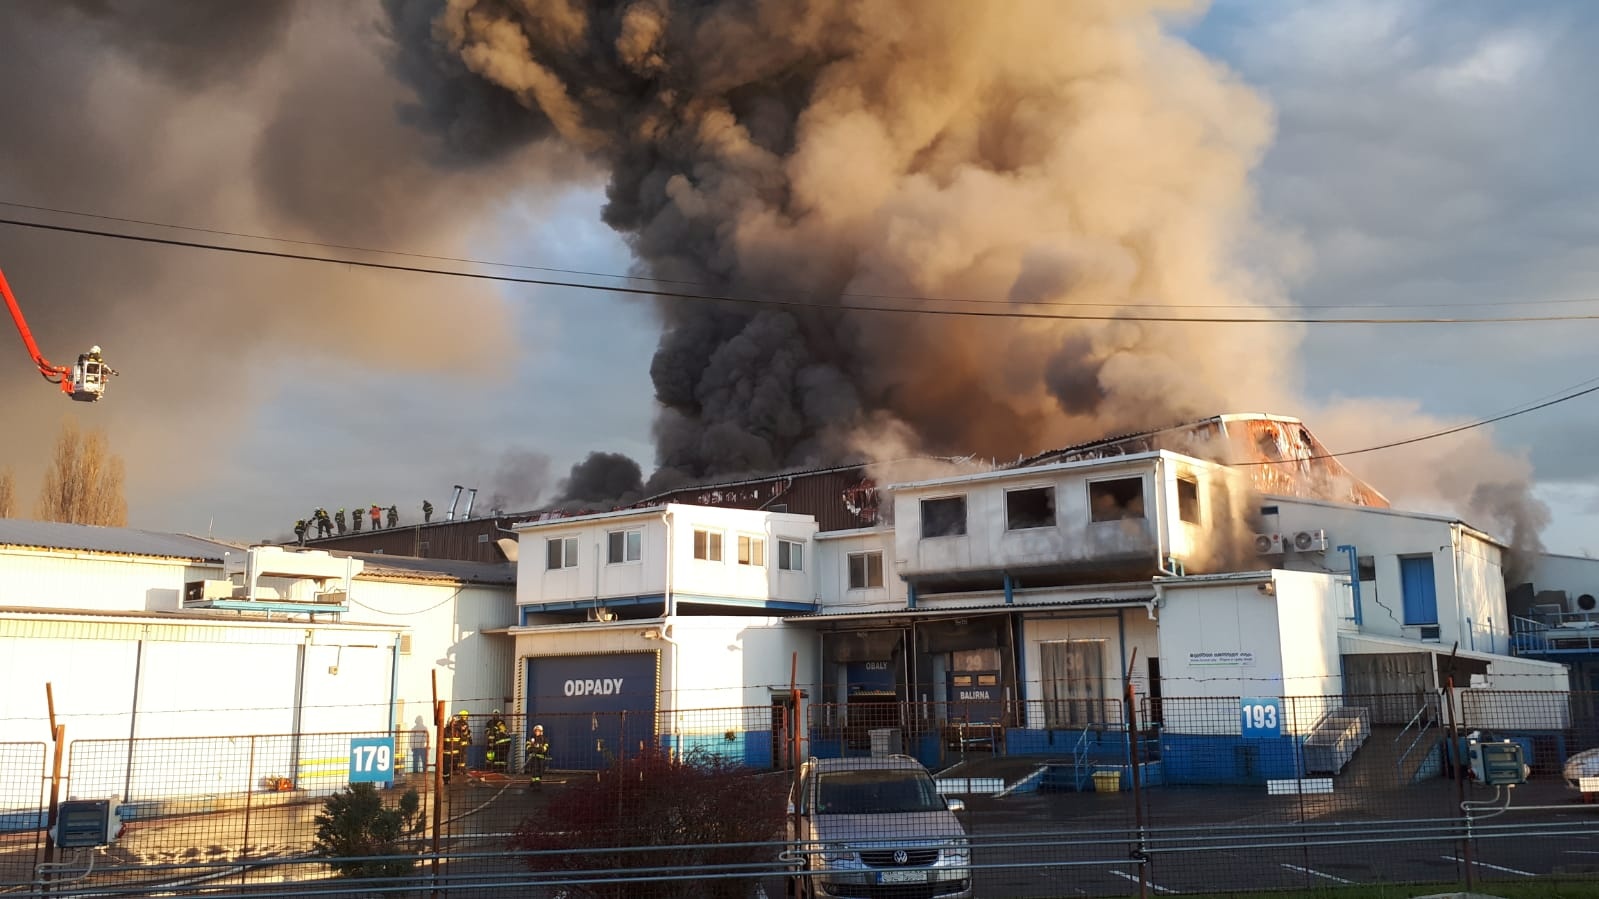 007-Požár v potravinářské firmě v Kralupech nad Vltavou.jpg